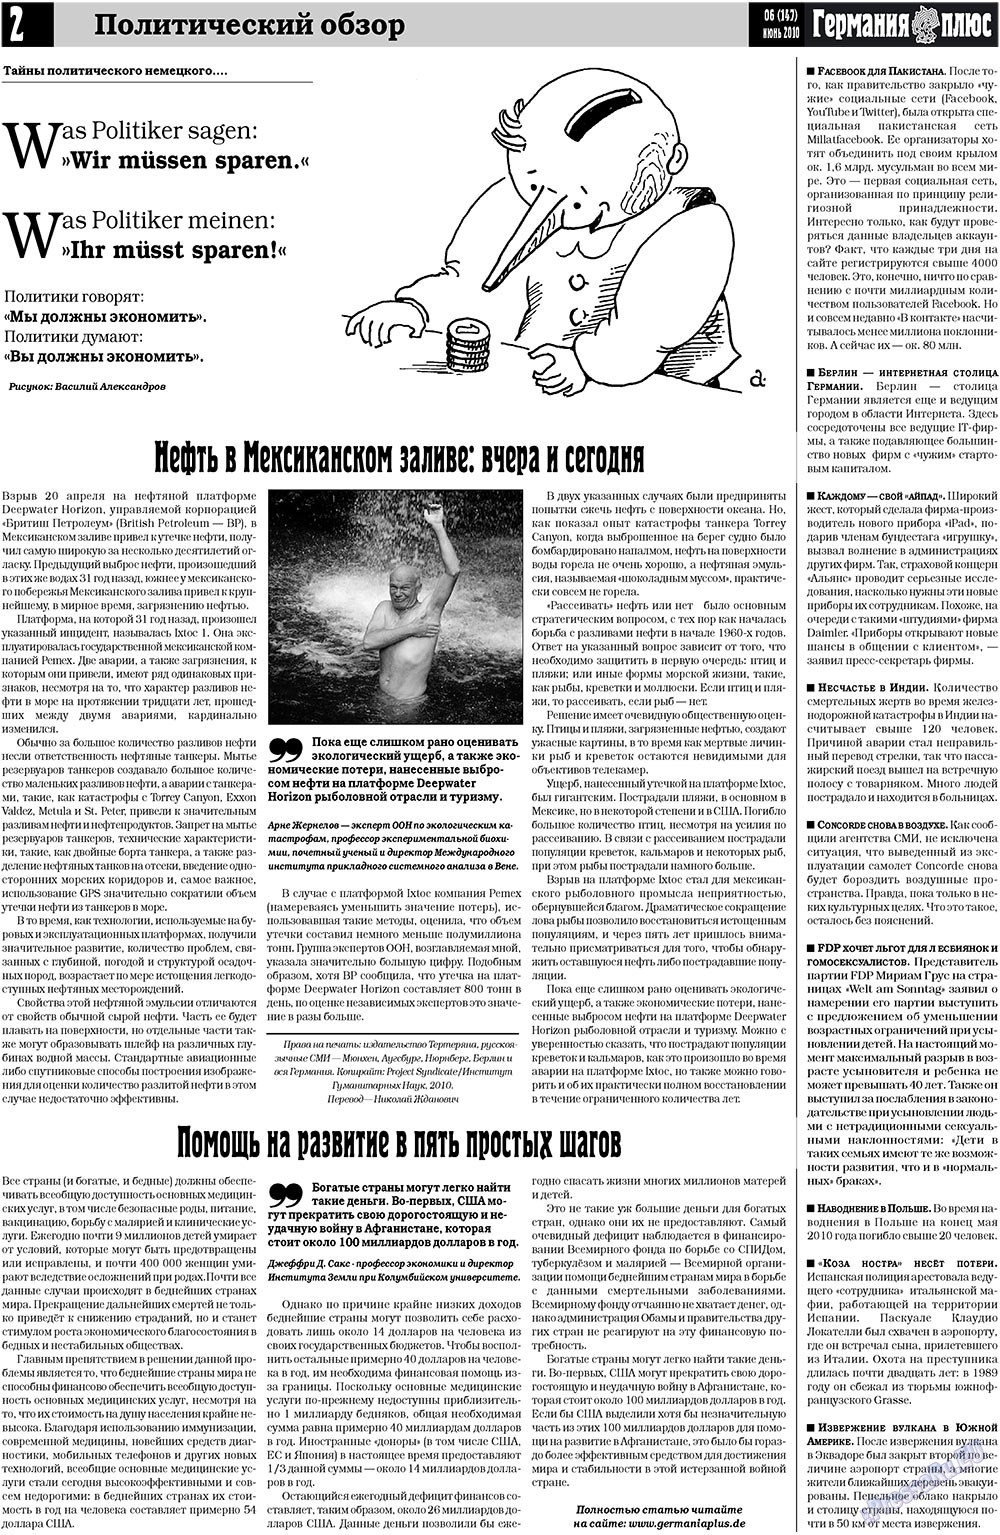 Германия плюс (газета). 2010 год, номер 6, стр. 2